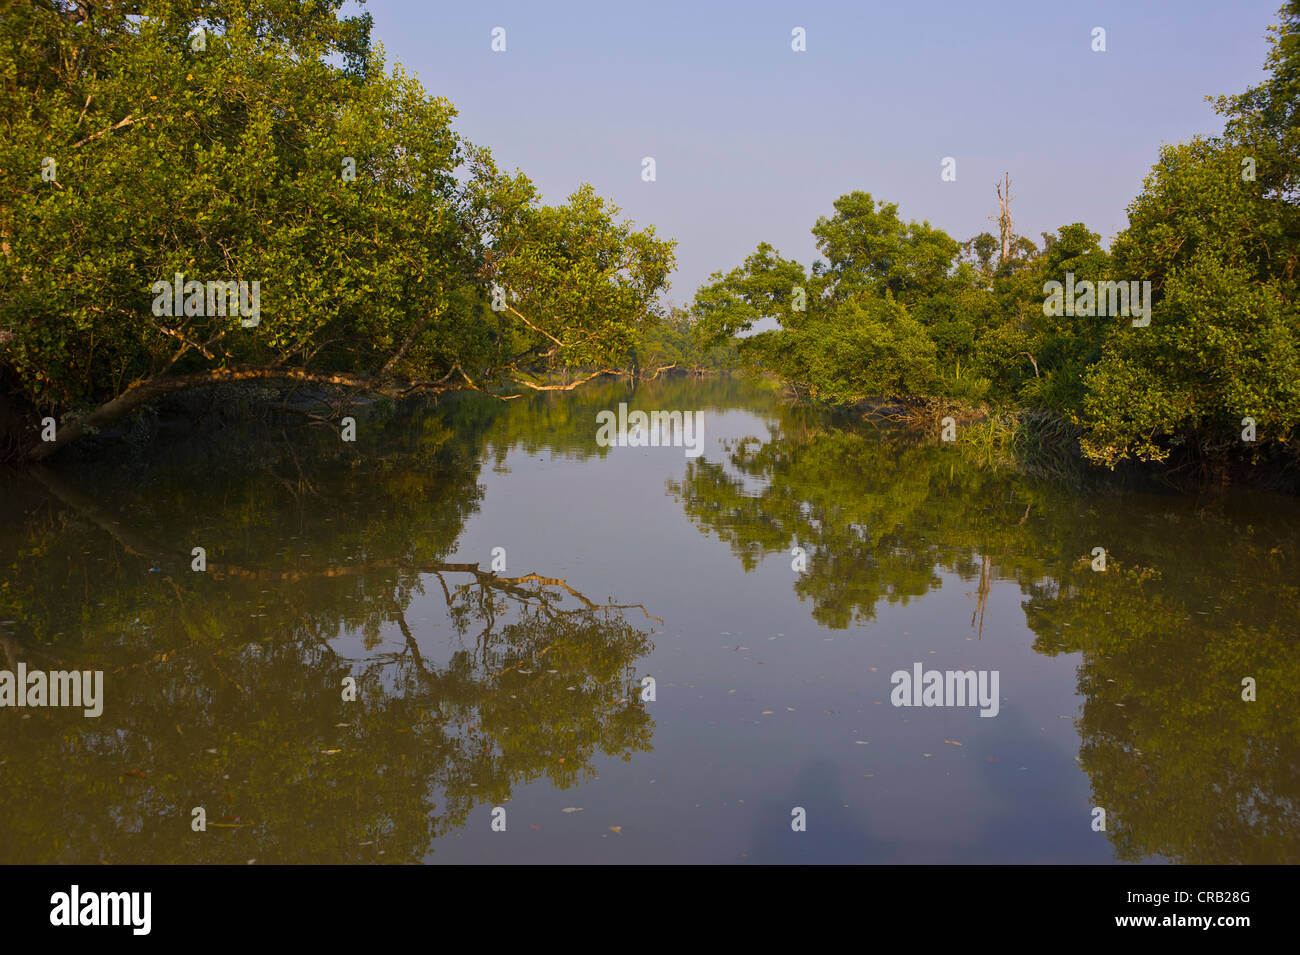 Les marais dans le patrimoine mondial de l'Asie, le Bangladesh, Sundarbans Banque D'Images